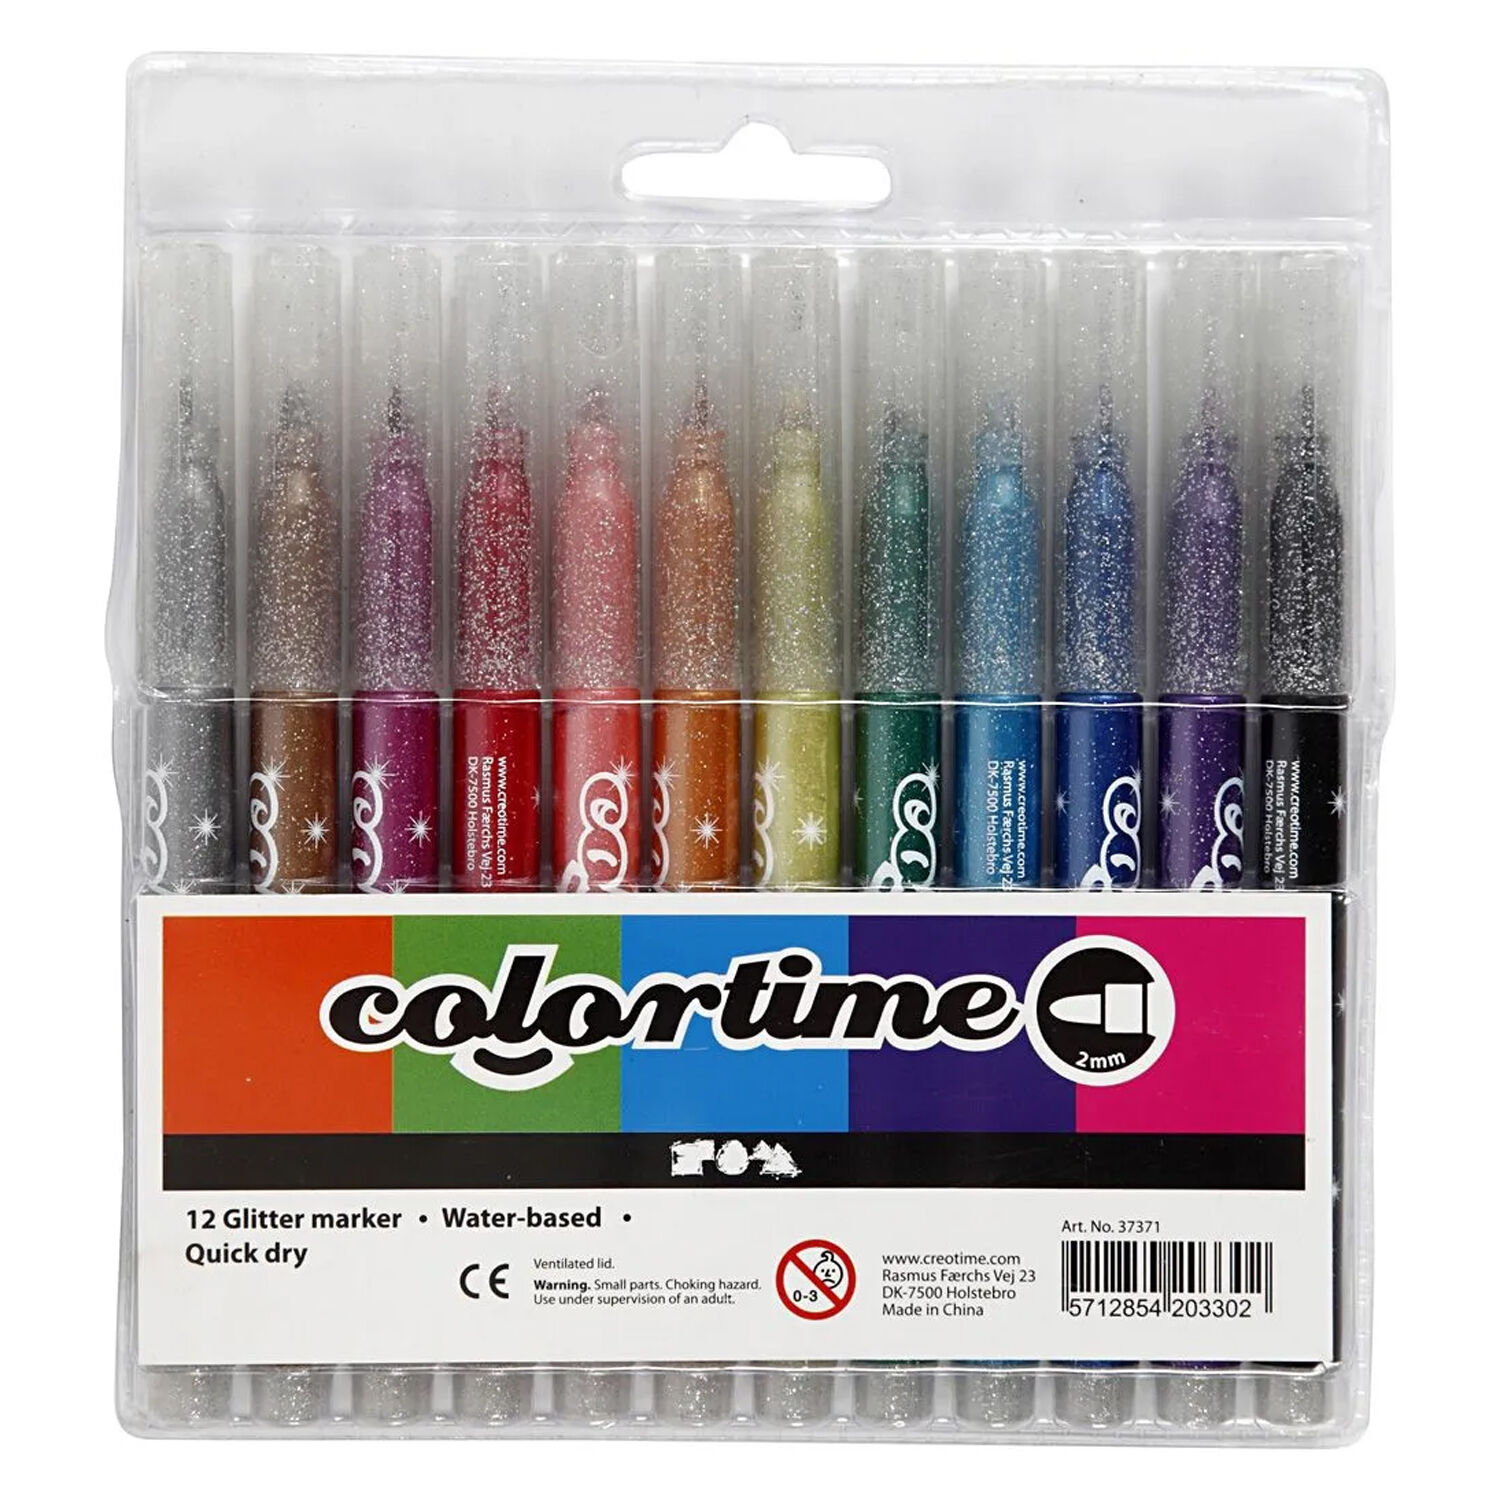 NEU Colortime Glitter Marker, Sortierte Farben, Strichstrke 2 mm, 12 Stk.